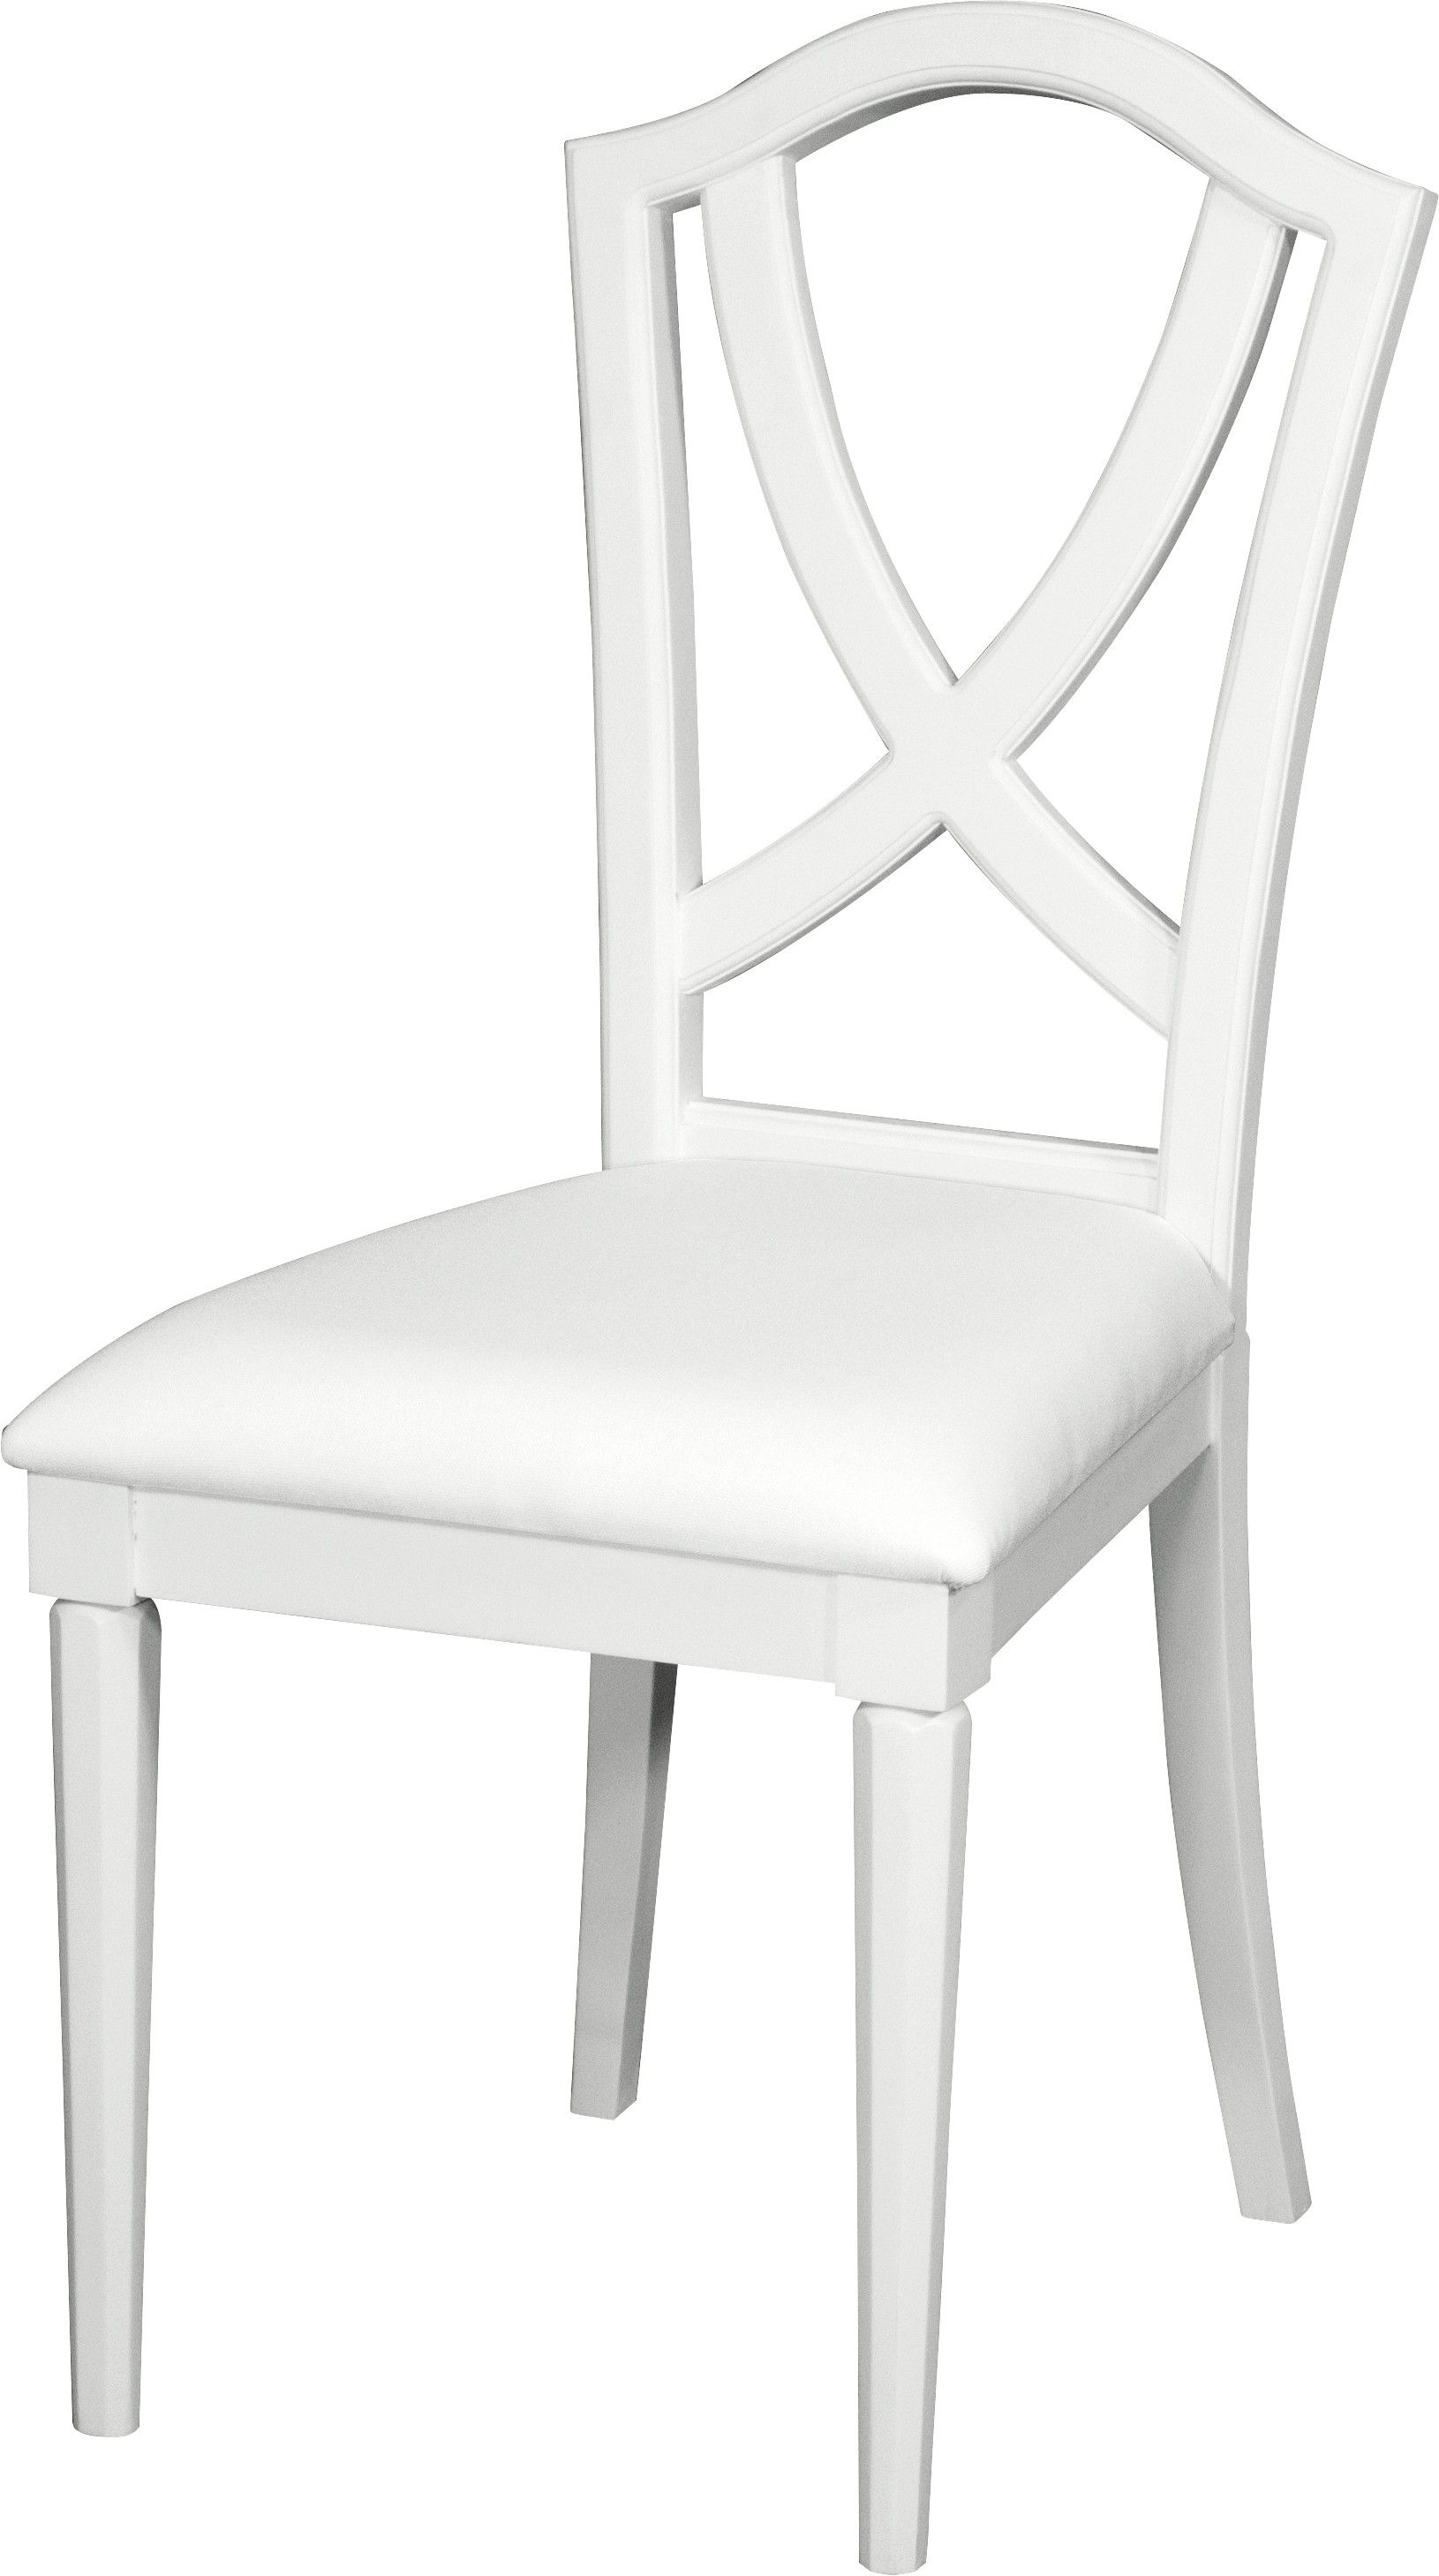 Estila Exkluzívna provensálska jedálenská stolička Belliene z masívu v bielom farebnom prevedení s tvarovanou opierkou 105cm